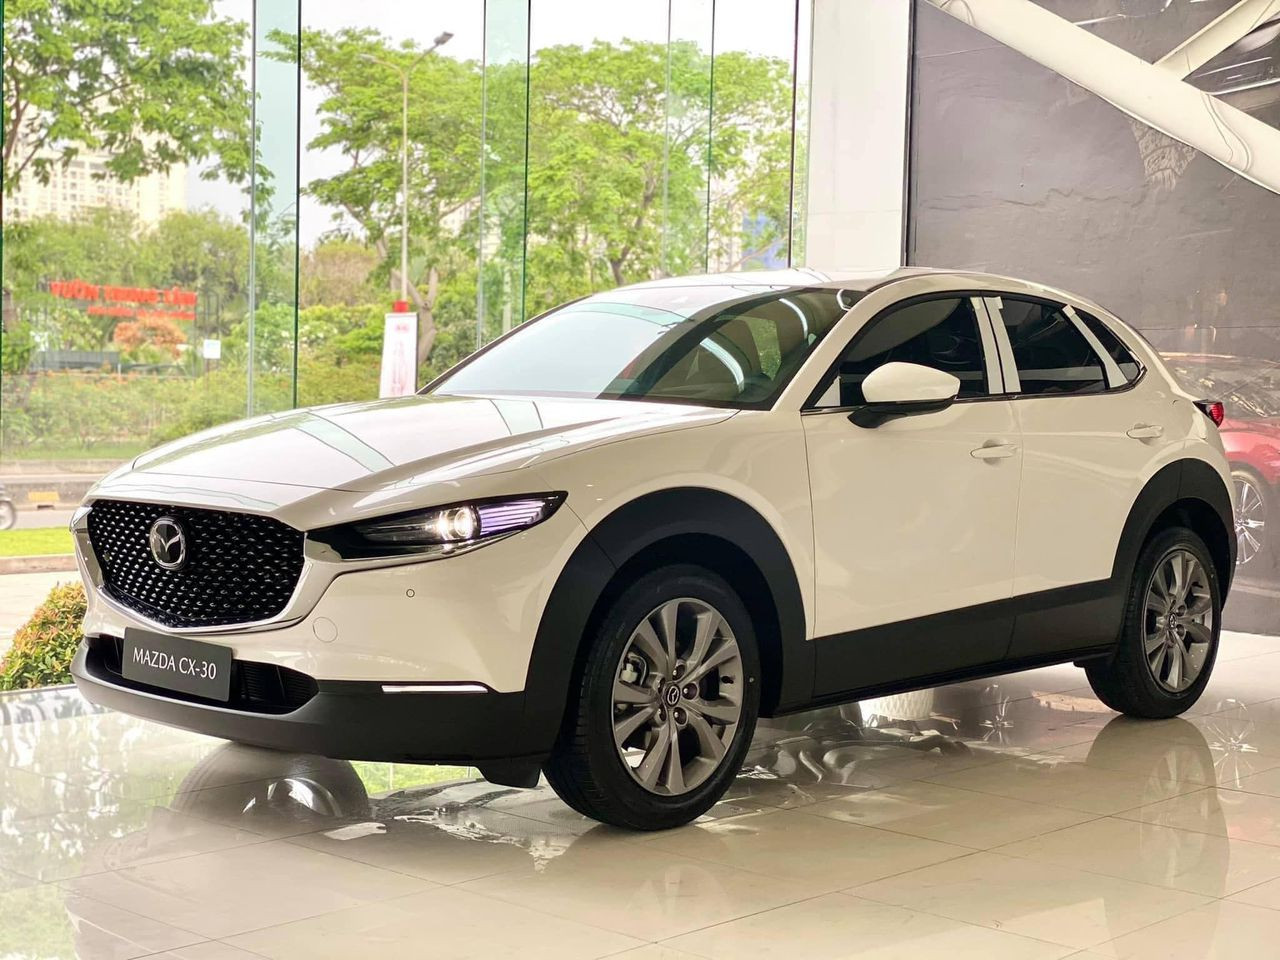 Có nên bán Hyundai i10 đời 2016 và vay thêm 450 triệu để mua Mazda CX-30?